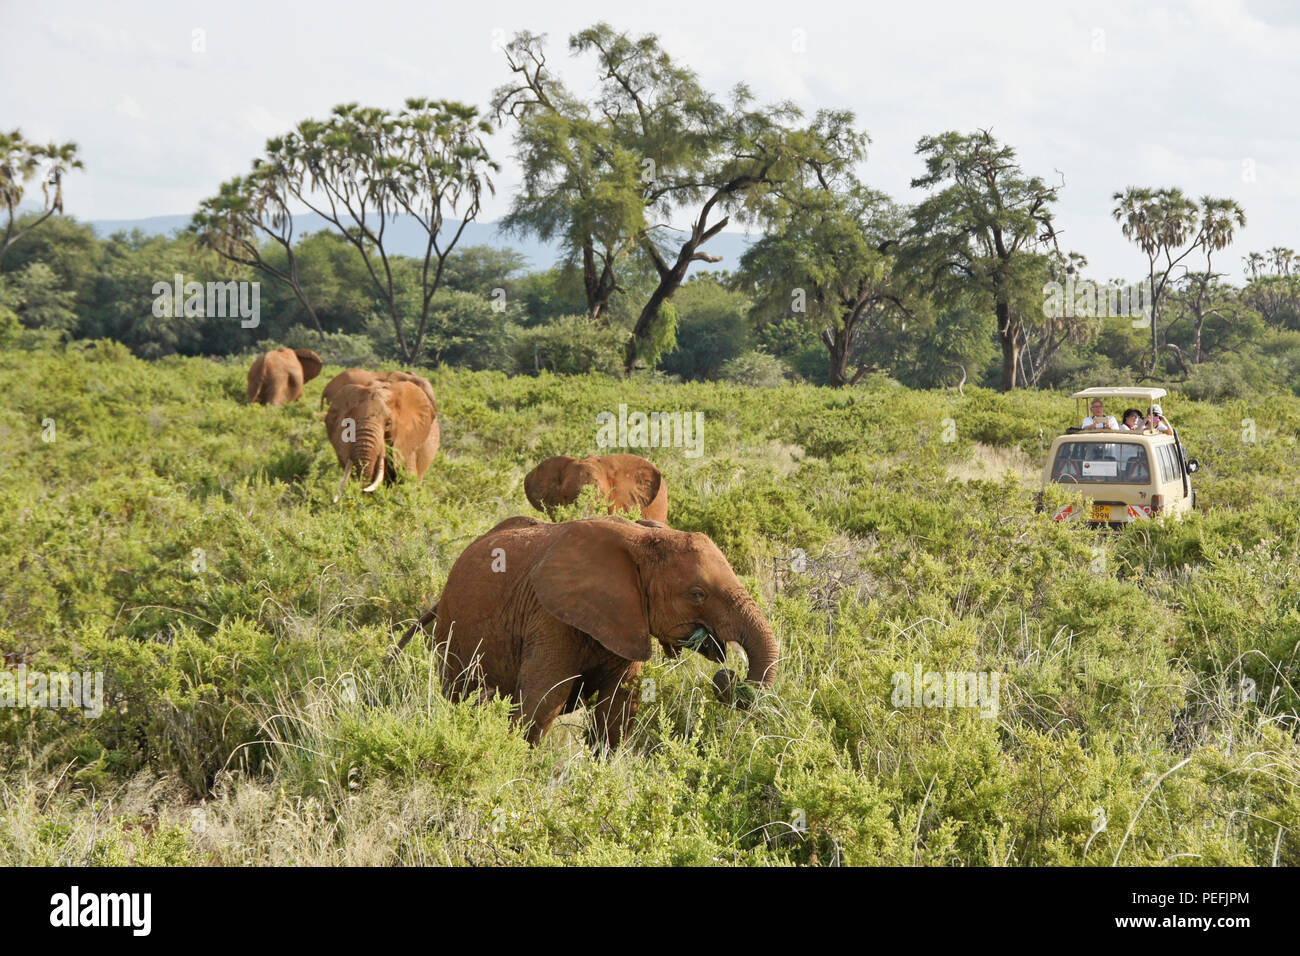 Safari vehicle surrounded by elephants feeding against a backdrop of doum palms and acacia trees, Samburu Game Reserve, Kenya Stock Photo